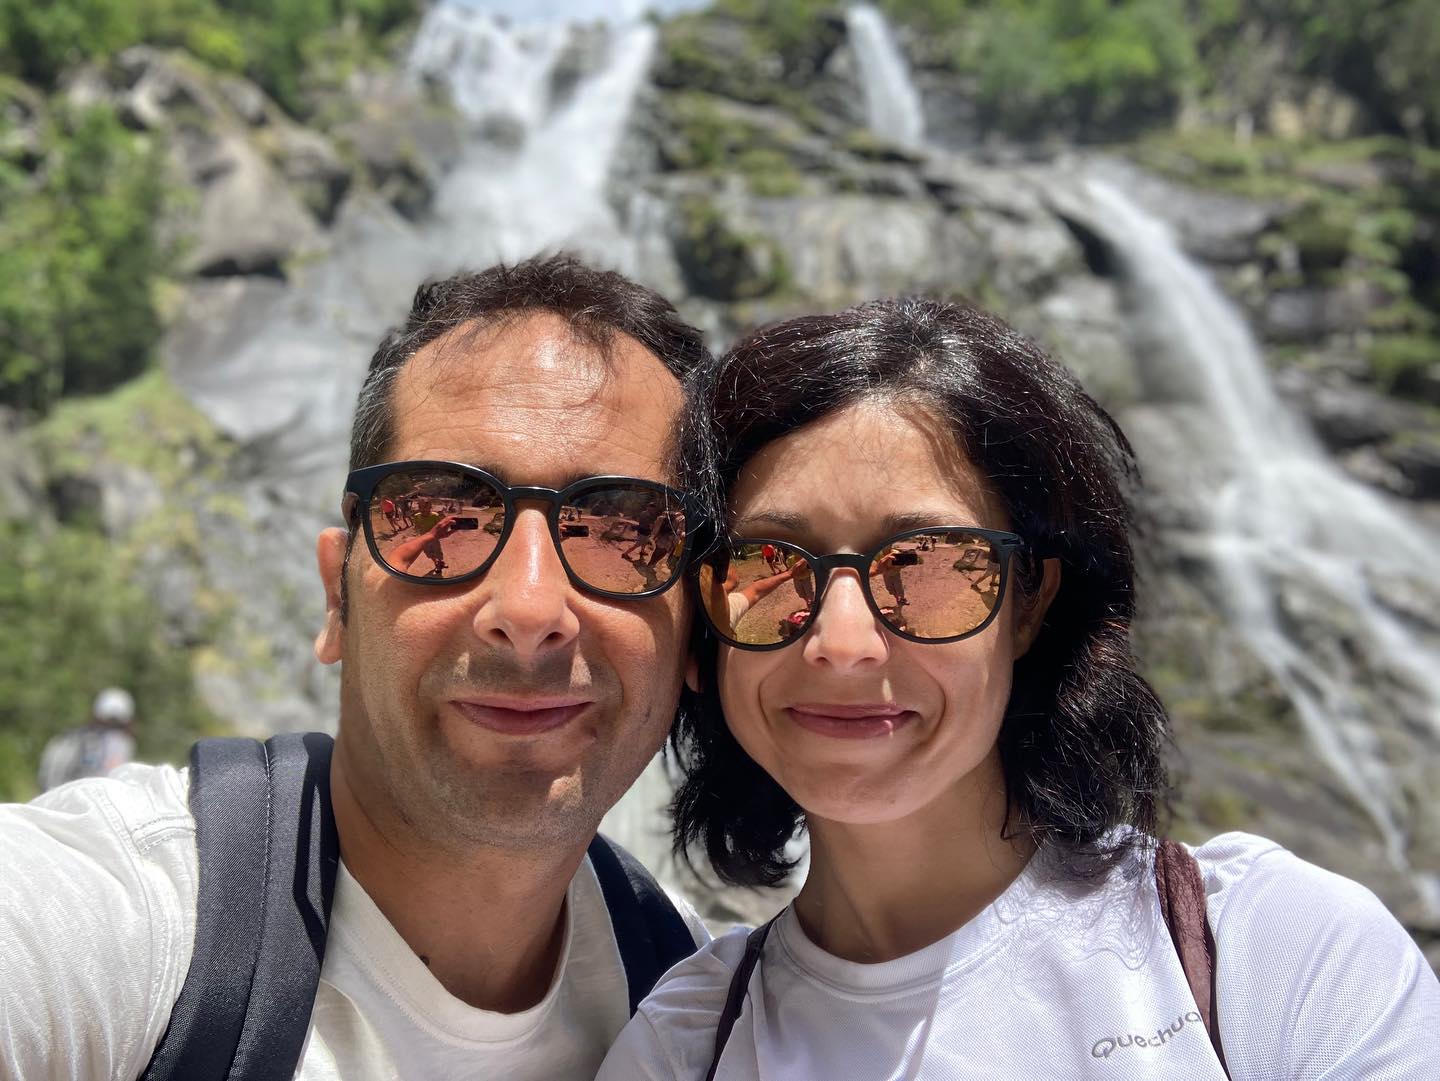 20 agosto 2022 - Carisolo (TN) - Cascate Nardis: Leotta Mario e Vitale Valentina. 